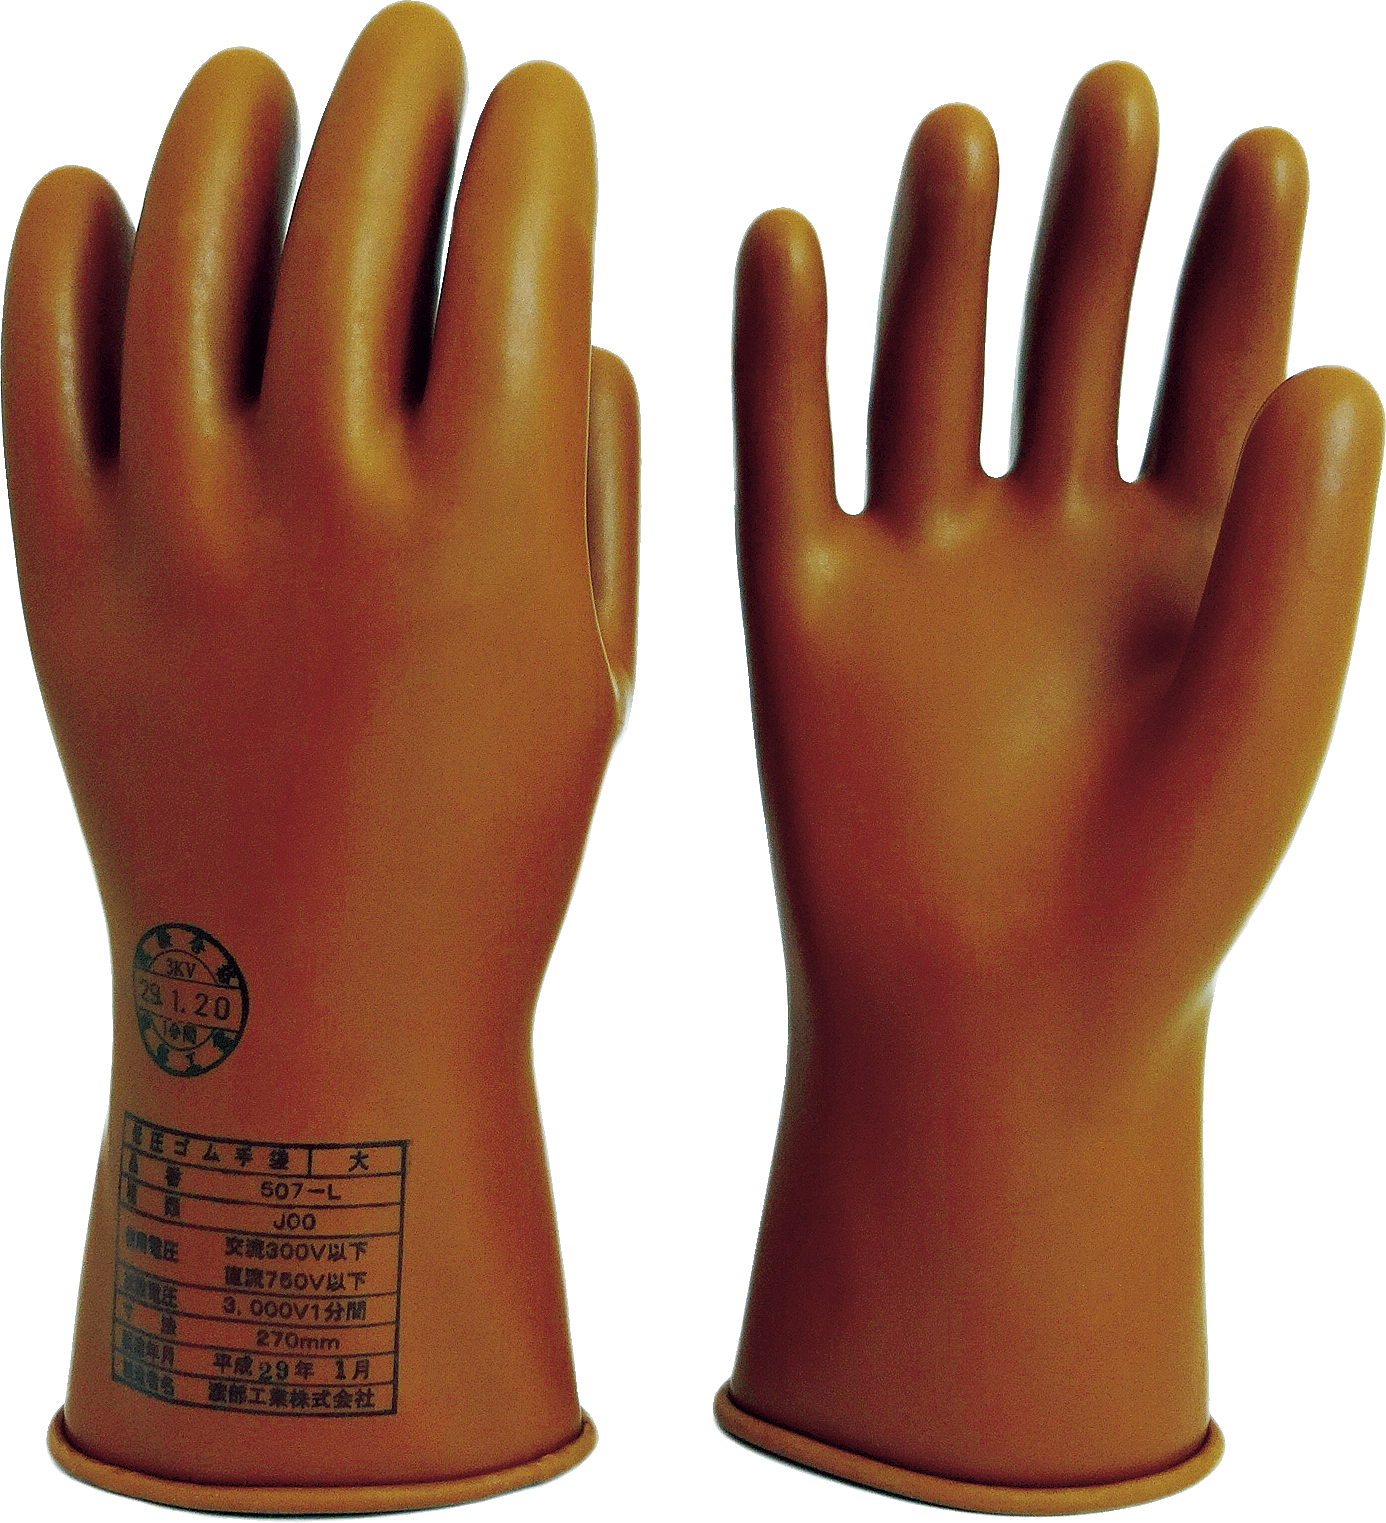 現場の手袋 - トラスコ中山の手袋カタログサイト